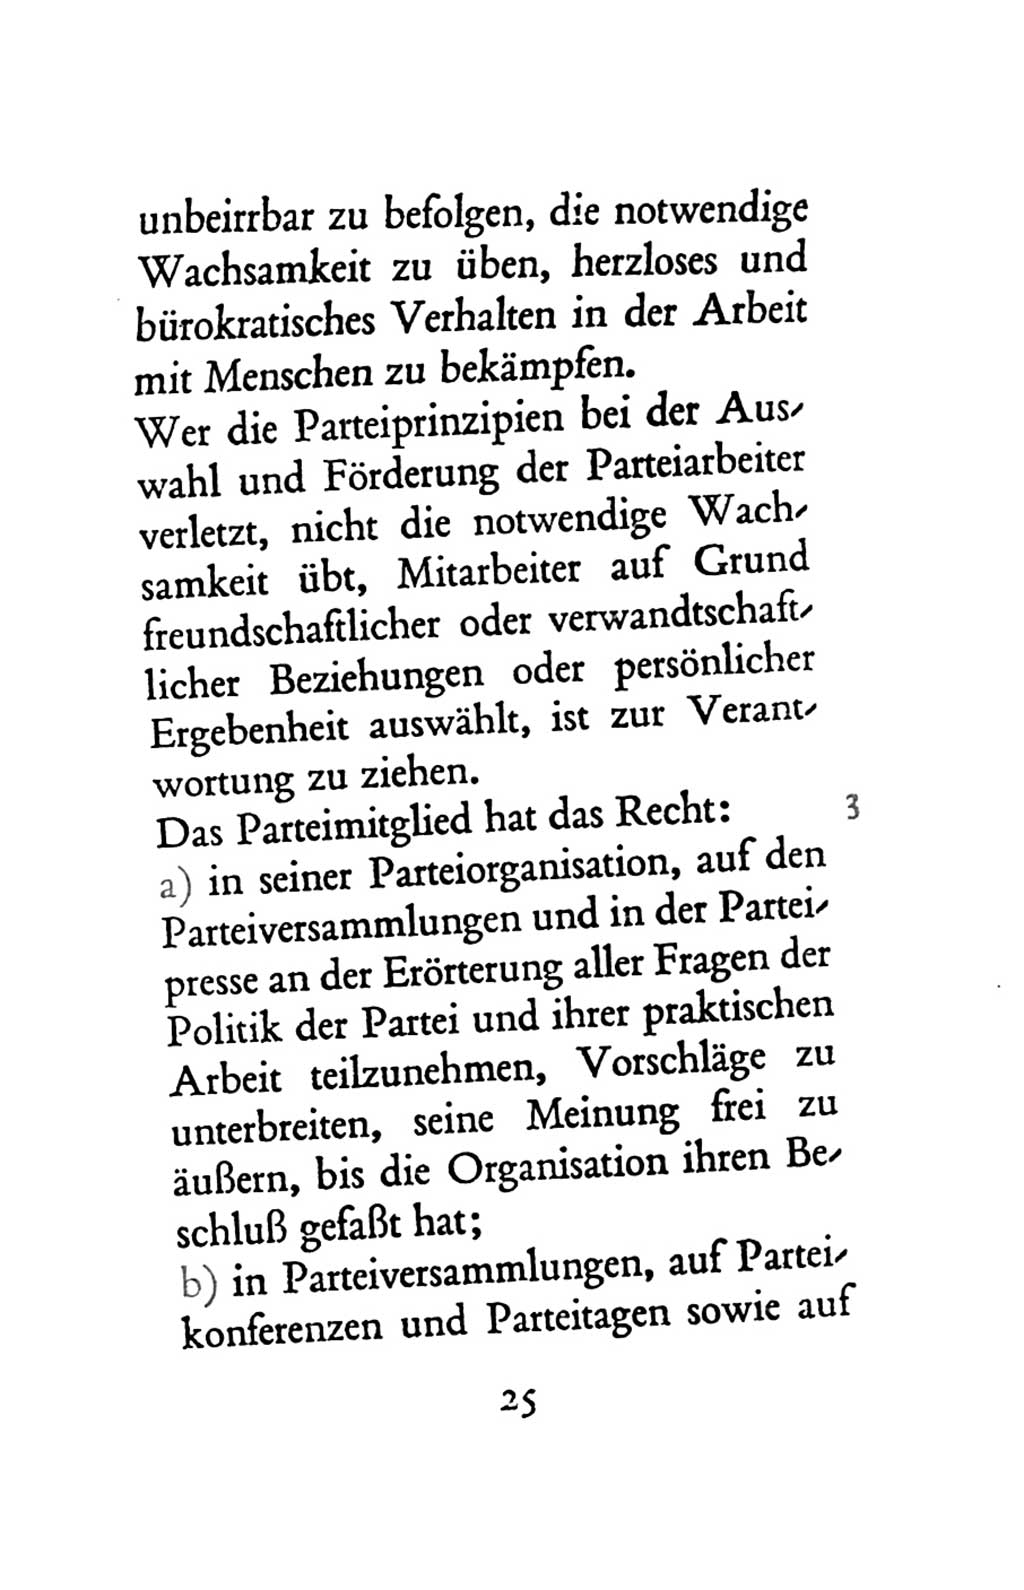 Statut der Sozialistischen Einheitspartei Deutschlands (SED) 1963, Seite 25 (St. SED DDR 1963, S. 25)